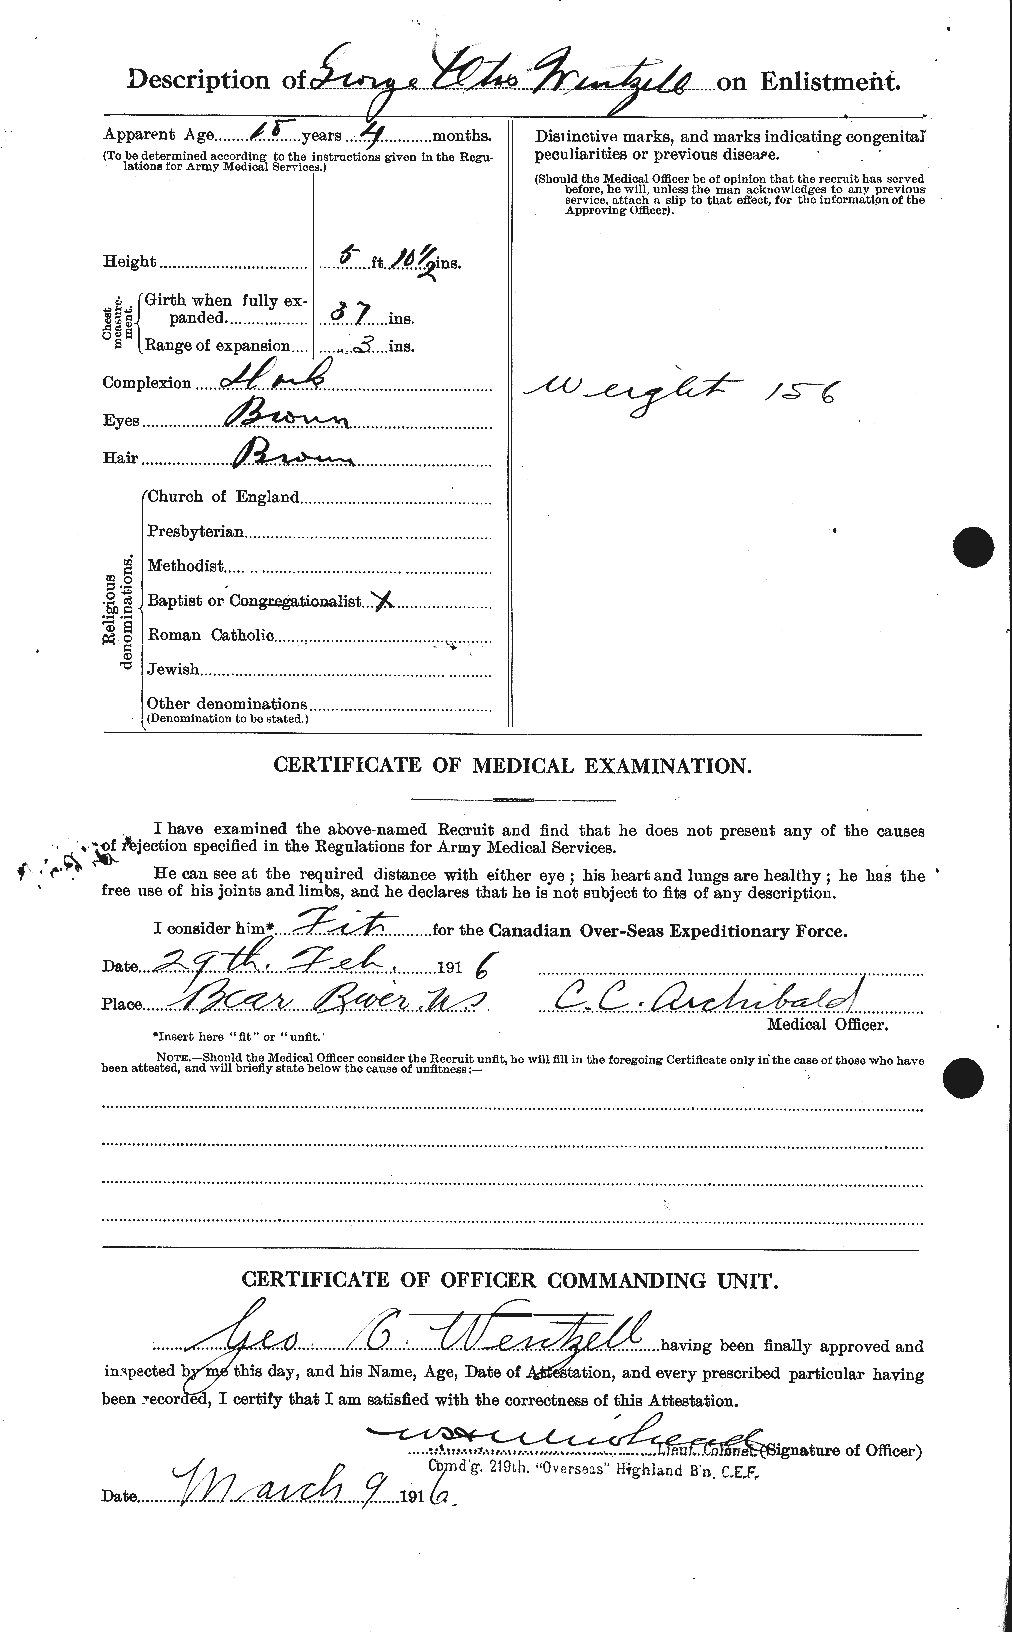 Dossiers du Personnel de la Première Guerre mondiale - CEC 664651b